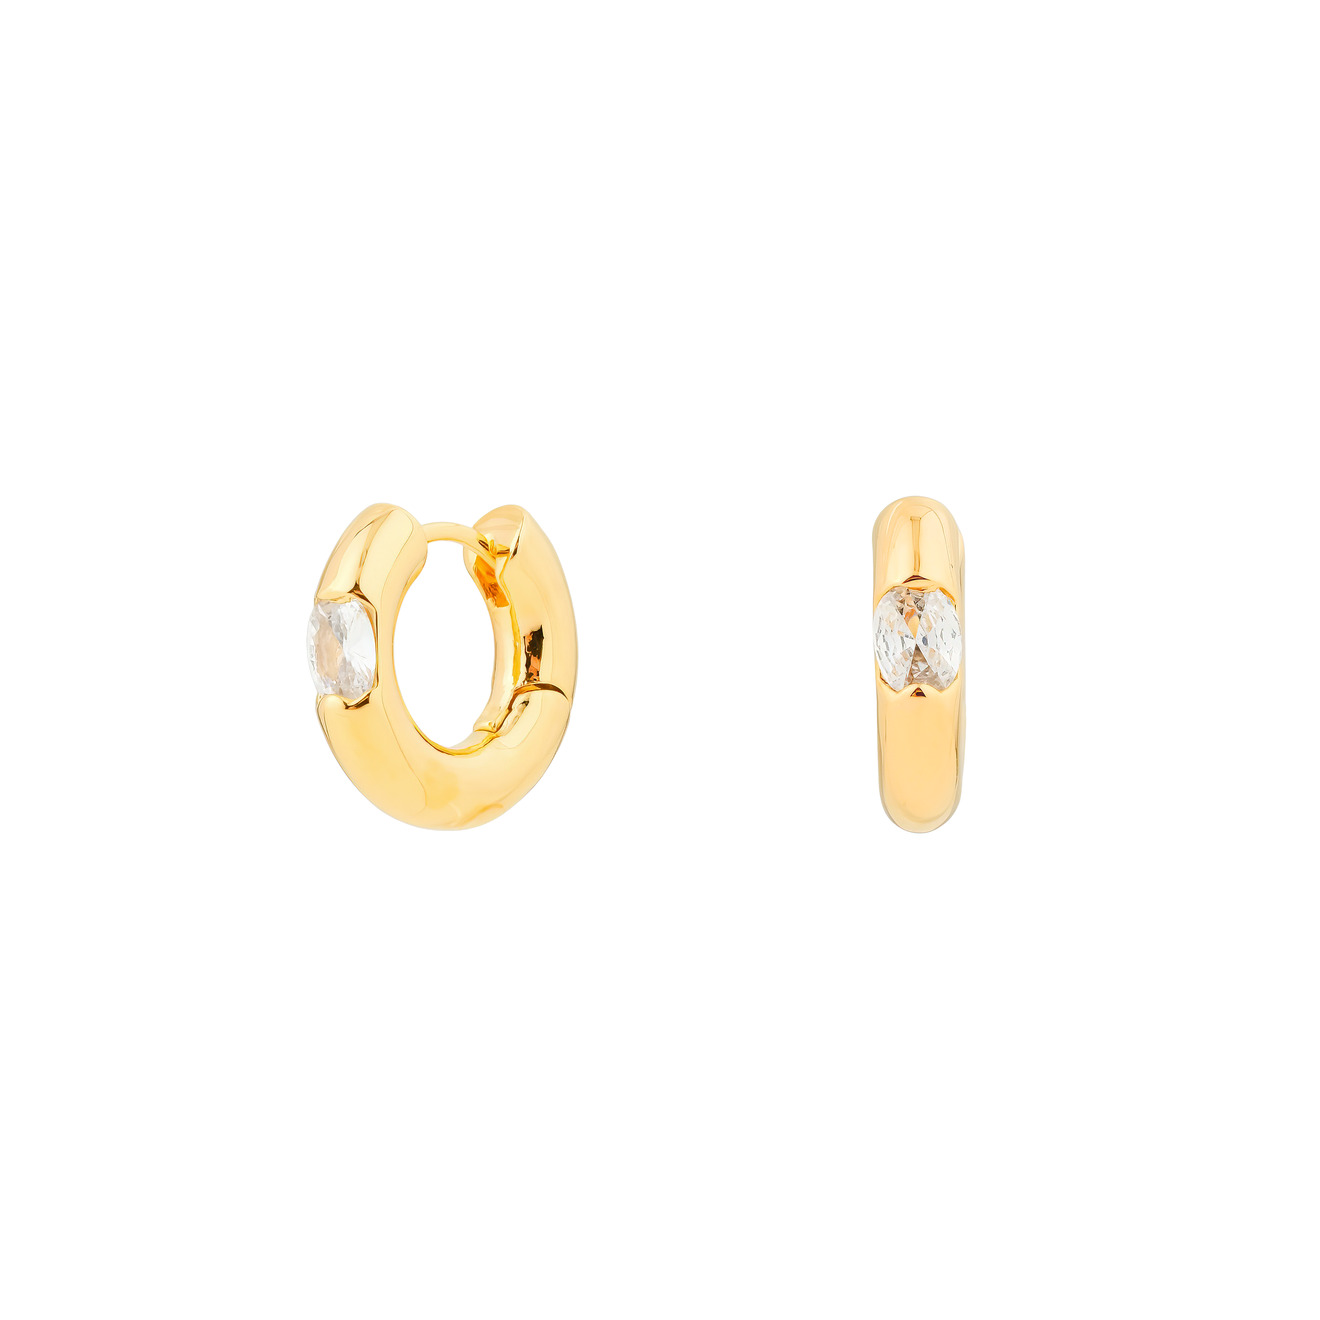 Herald Percy Золотистые дутые серьги-кольца с овальными кристаллами